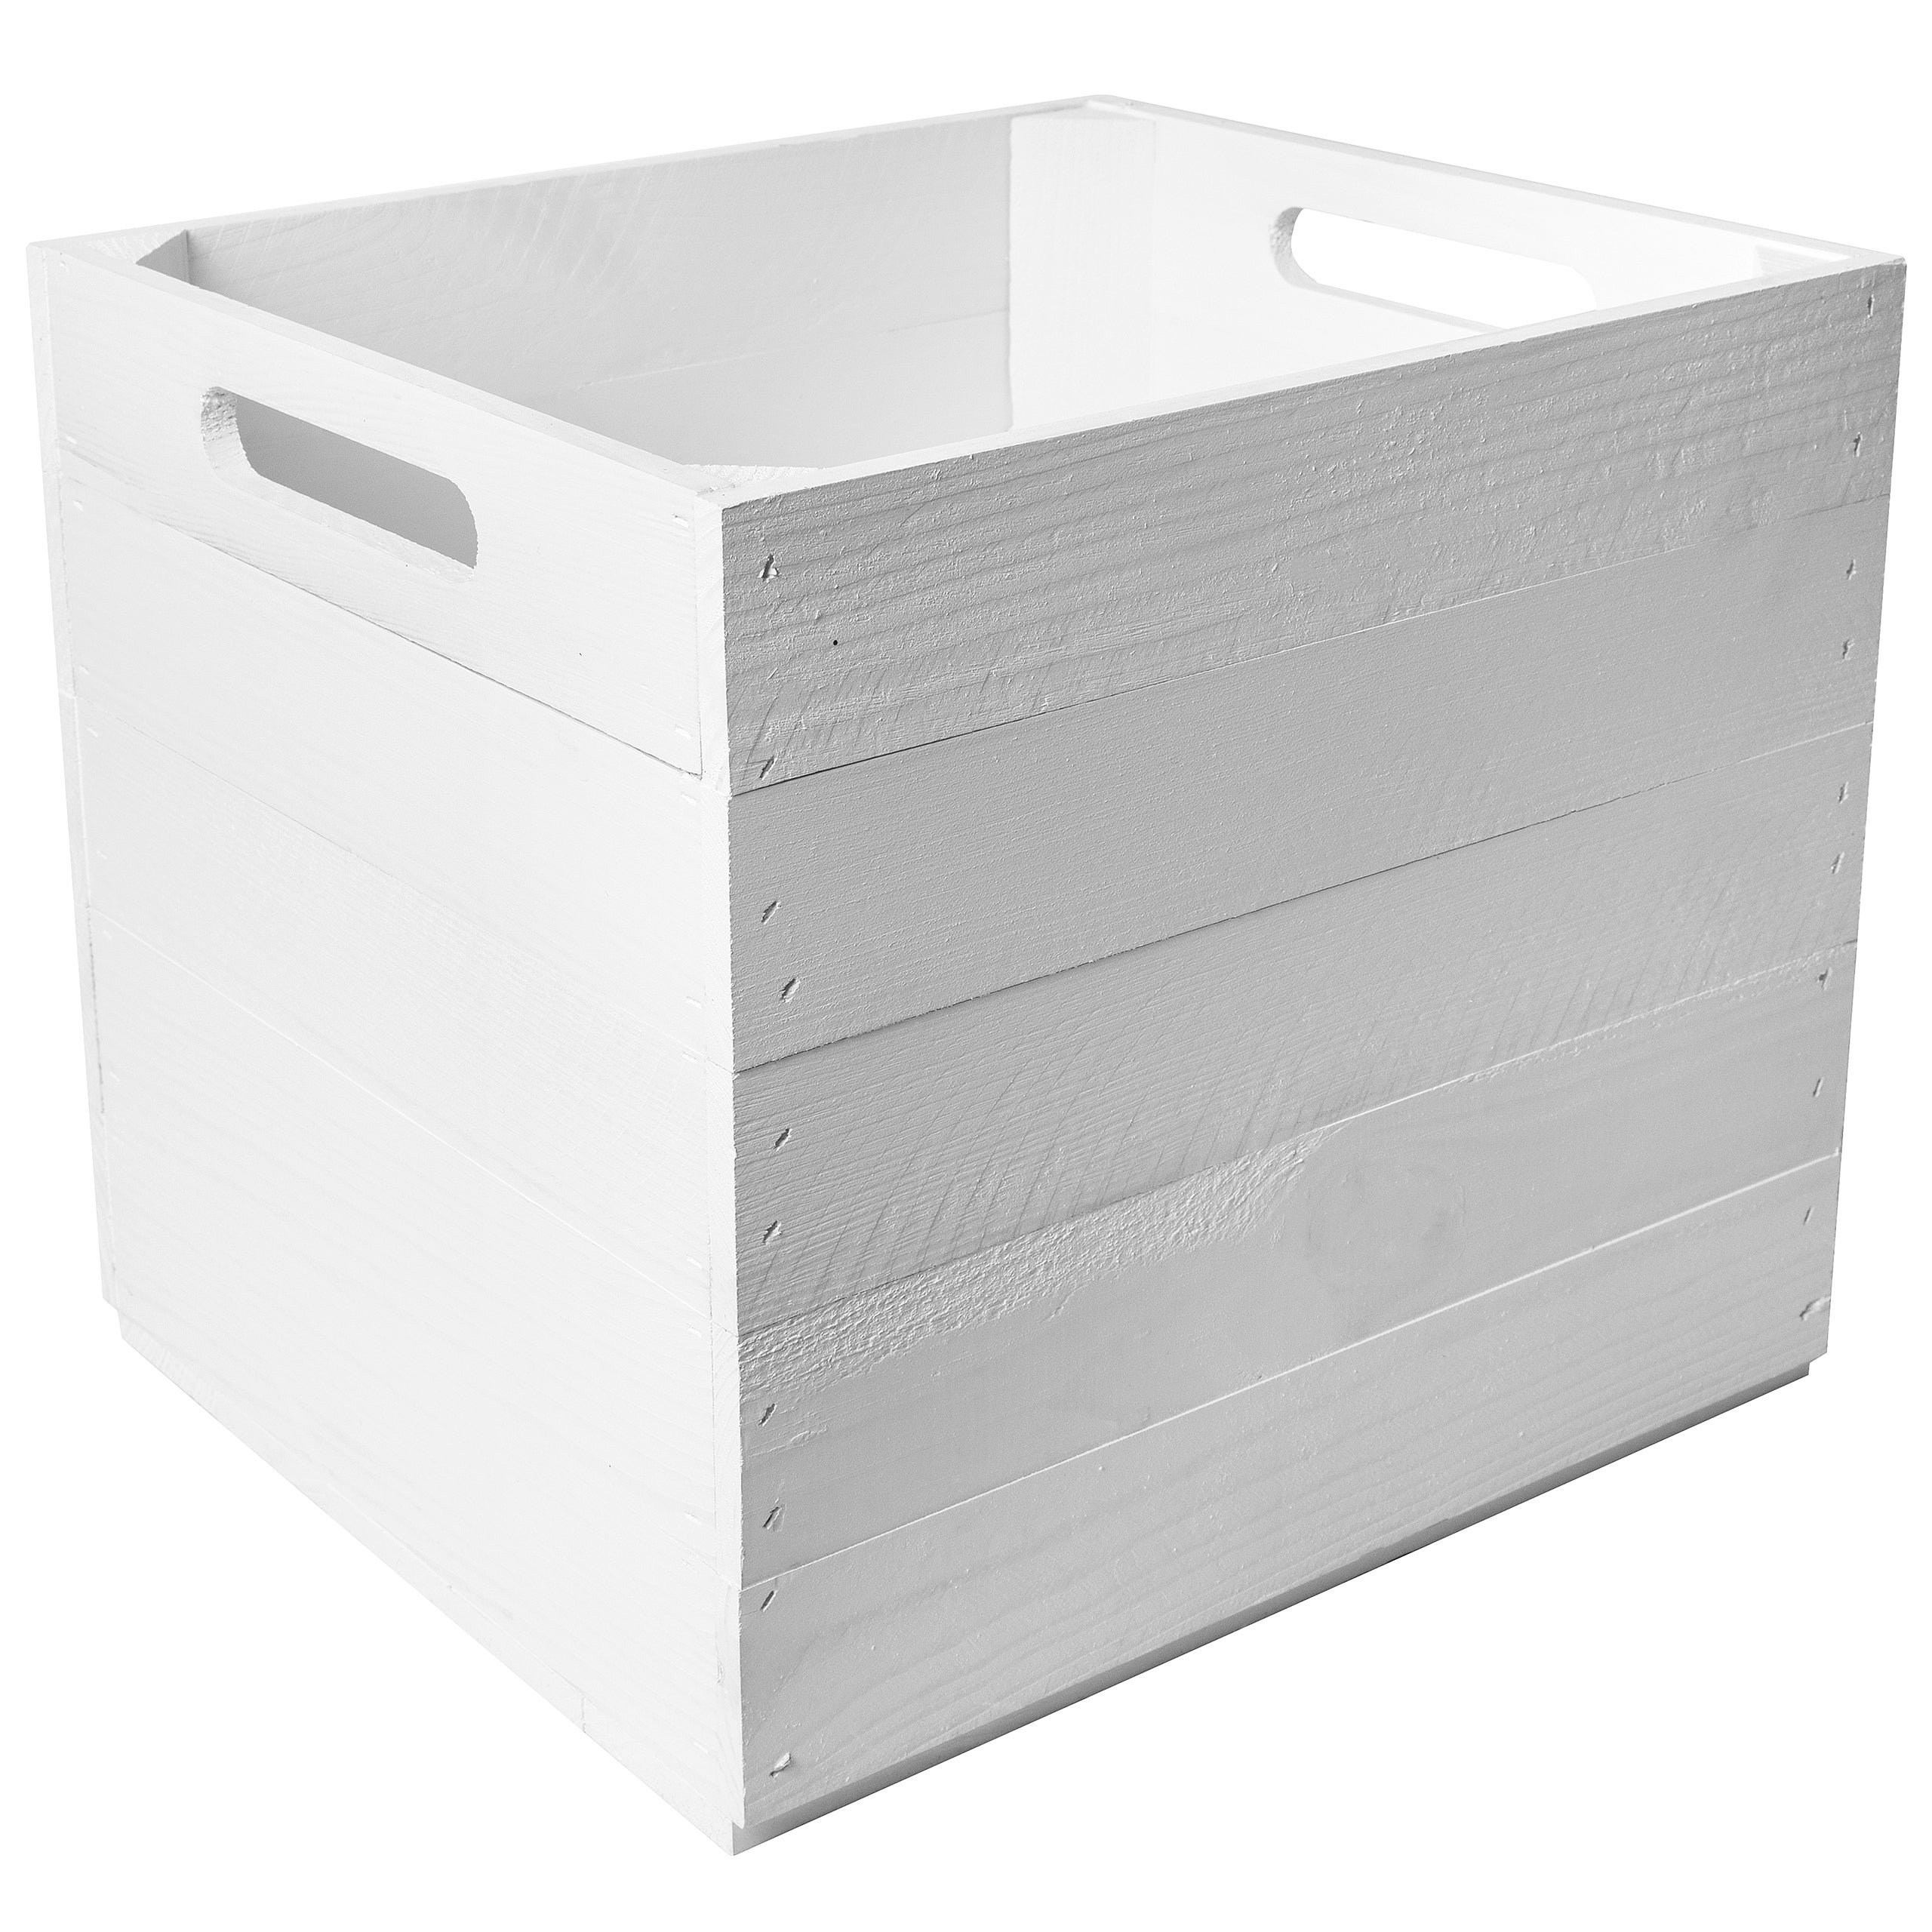 Creative Deco Caja de Madera Natural Compatible con Estantes Kallax, 33x37x33cm, Cesta Decorativa Blanca con Asas, Cajón Almacenaje Juguetes